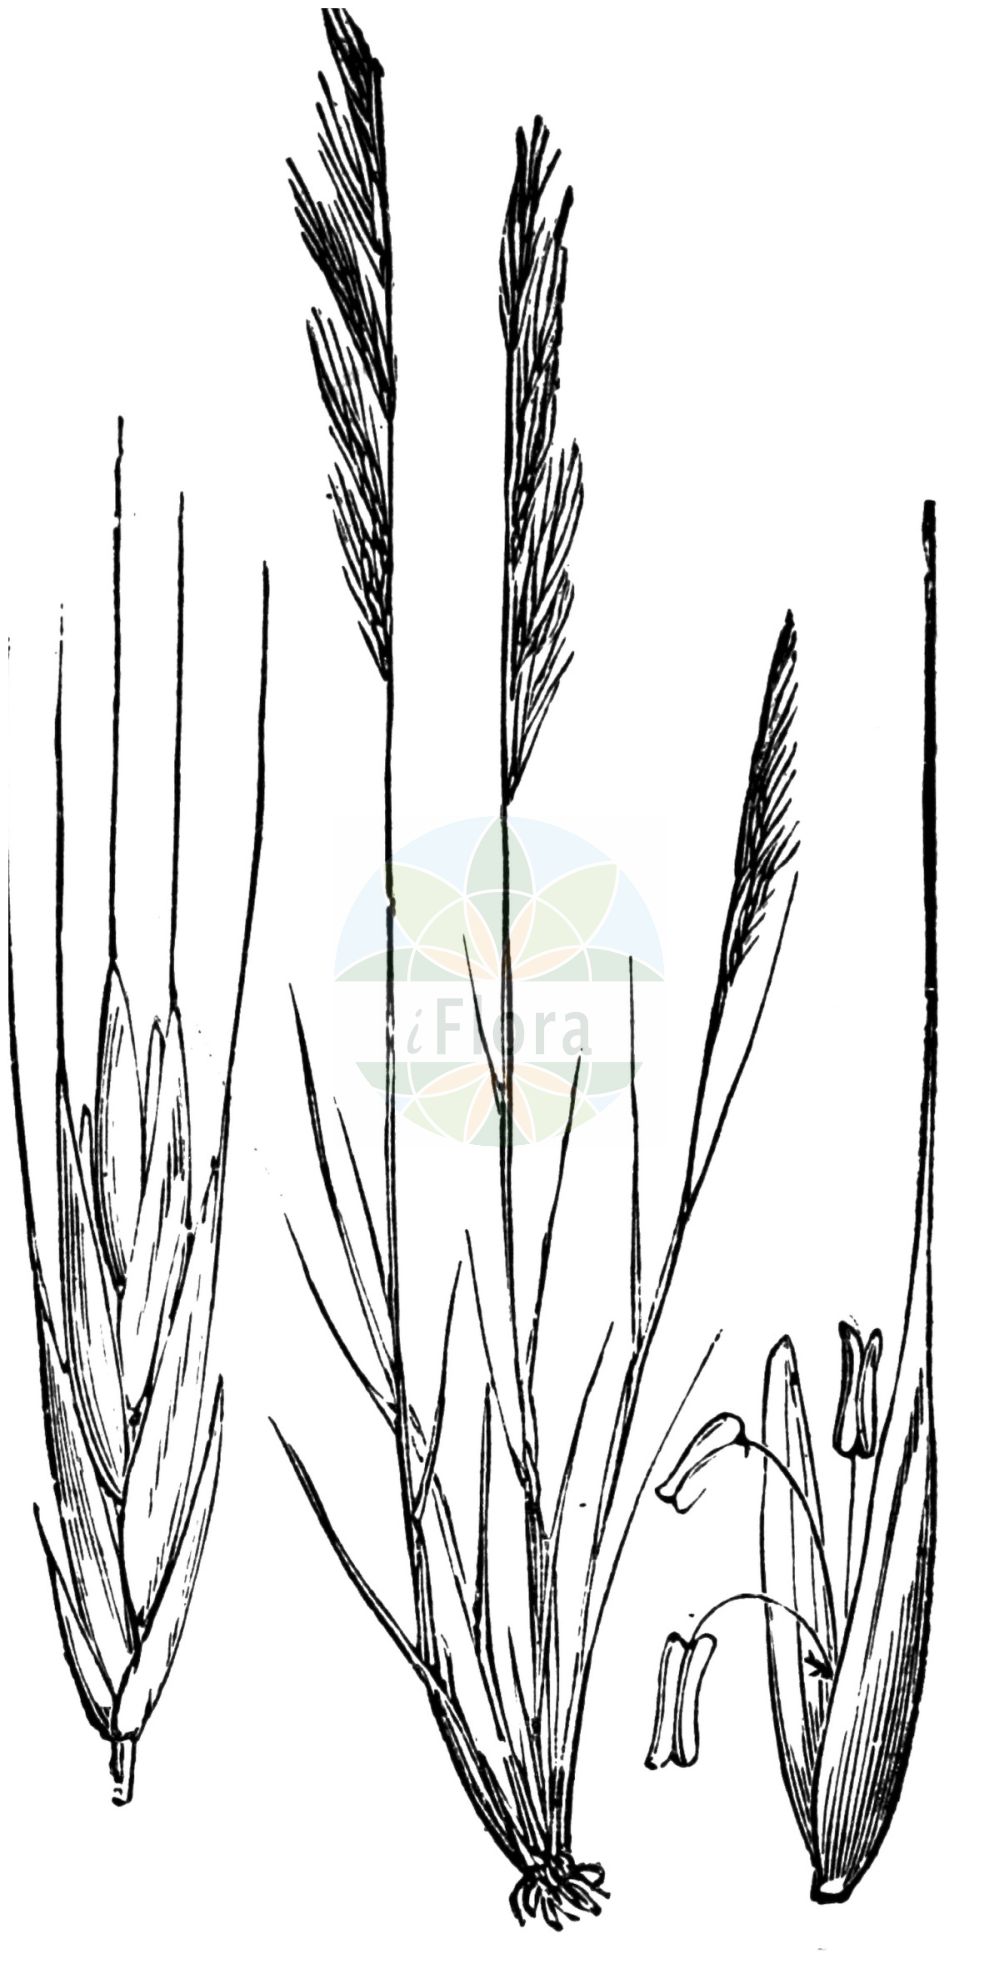 Historische Abbildung von Vulpia myuros (Mäuseschwanz-Federschwingel - Rat's-tail Fescue). Das Bild zeigt Blatt, Bluete, Frucht und Same. ---- Historical Drawing of Vulpia myuros (Mäuseschwanz-Federschwingel - Rat's-tail Fescue). The image is showing leaf, flower, fruit and seed.(Vulpia myuros,Mäuseschwanz-Federschwingel,Rat's-tail Fescue,Festuca myuros,Festuca pseudomyuros,Vulpia megalura,Vulpia myuros,Vulpia pseudomyuros,Maeuseschwanz-Federschwingel,Gewoehnlicher Federschwingel,Rat's-tail Fescue,Rat-tail Fescue,Vulpia,Federschwingel,Fescue,Poaceae,Süßgräser,Grass family,Blatt,Bluete,Frucht,Same,leaf,flower,fruit,seed,Fitch et al. (1880))